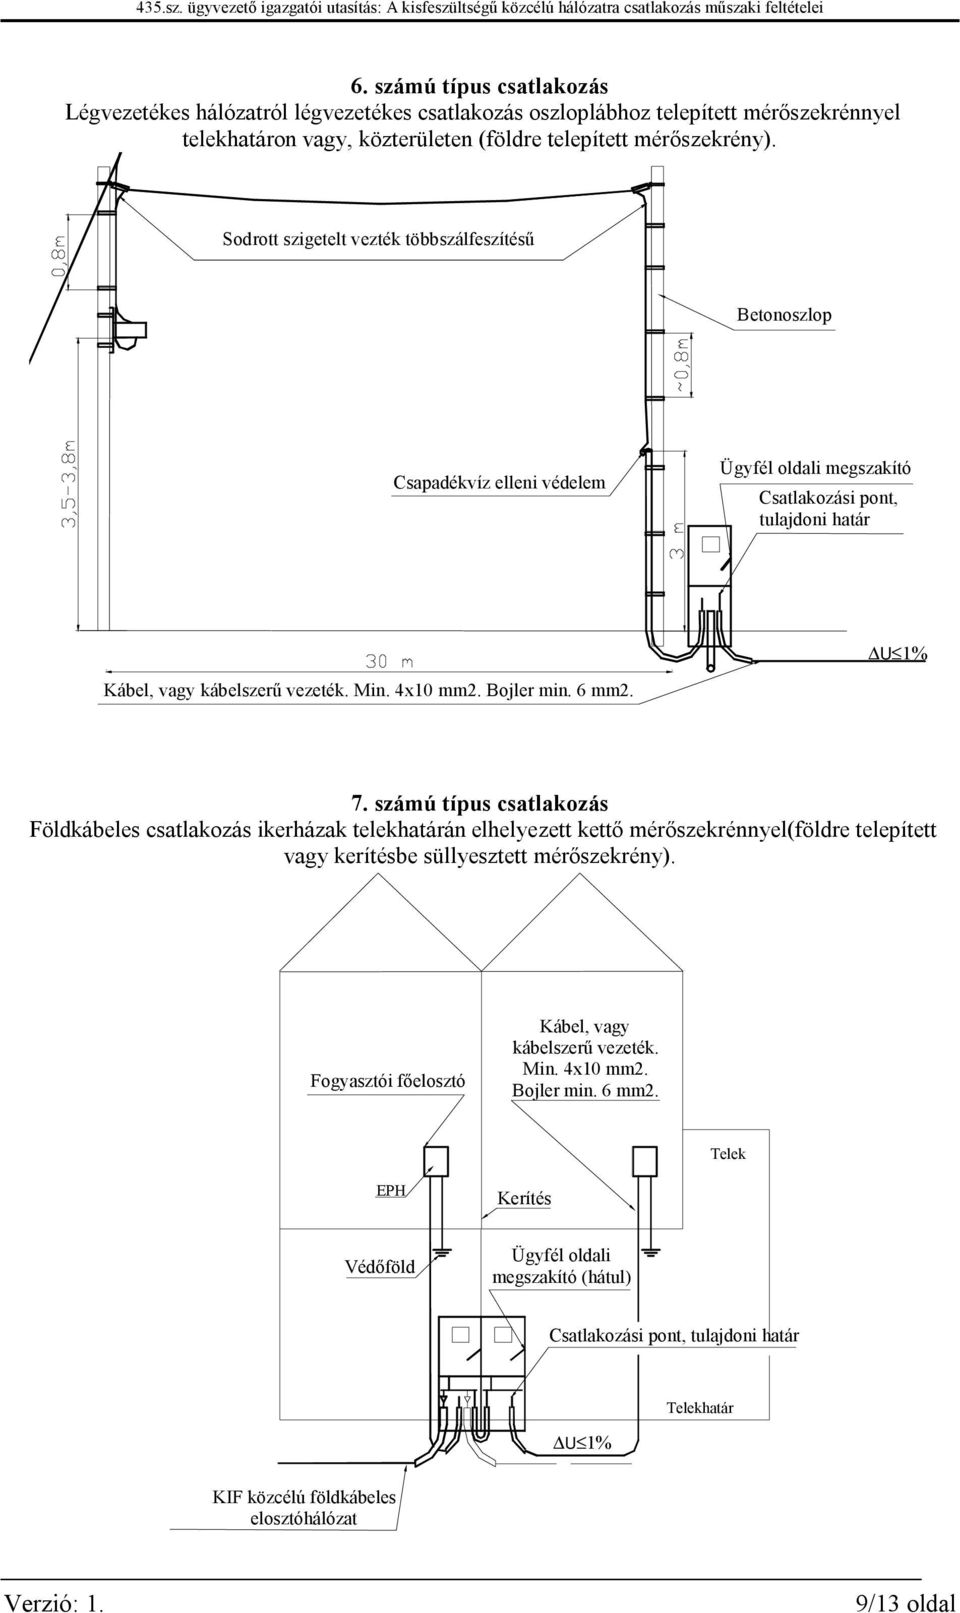 Bojler min. 6 mm2. 7. számú típus csatlakozás Földkábeles csatlakozás ikerházak telekhatárán elhelyezett kettő mérőszekrénnyel(földre telepített vagy kerítésbe süllyesztett mérőszekrény).